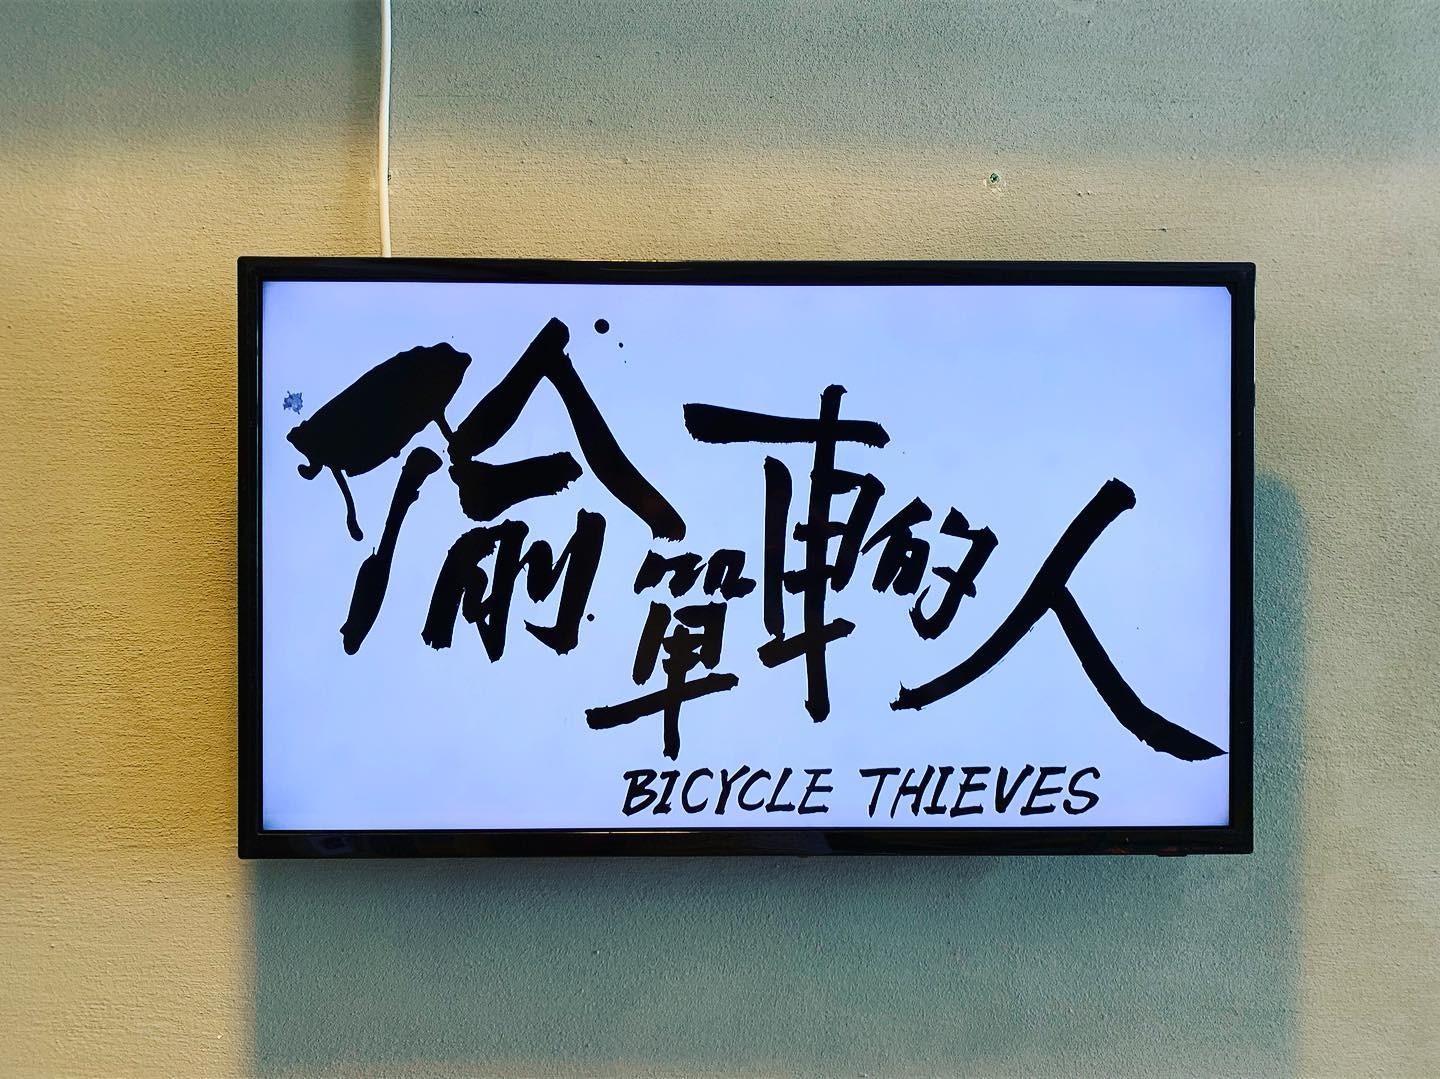 徐世琪及曾家偉參與香港Para Site藝術空間群展「偷單車的人」